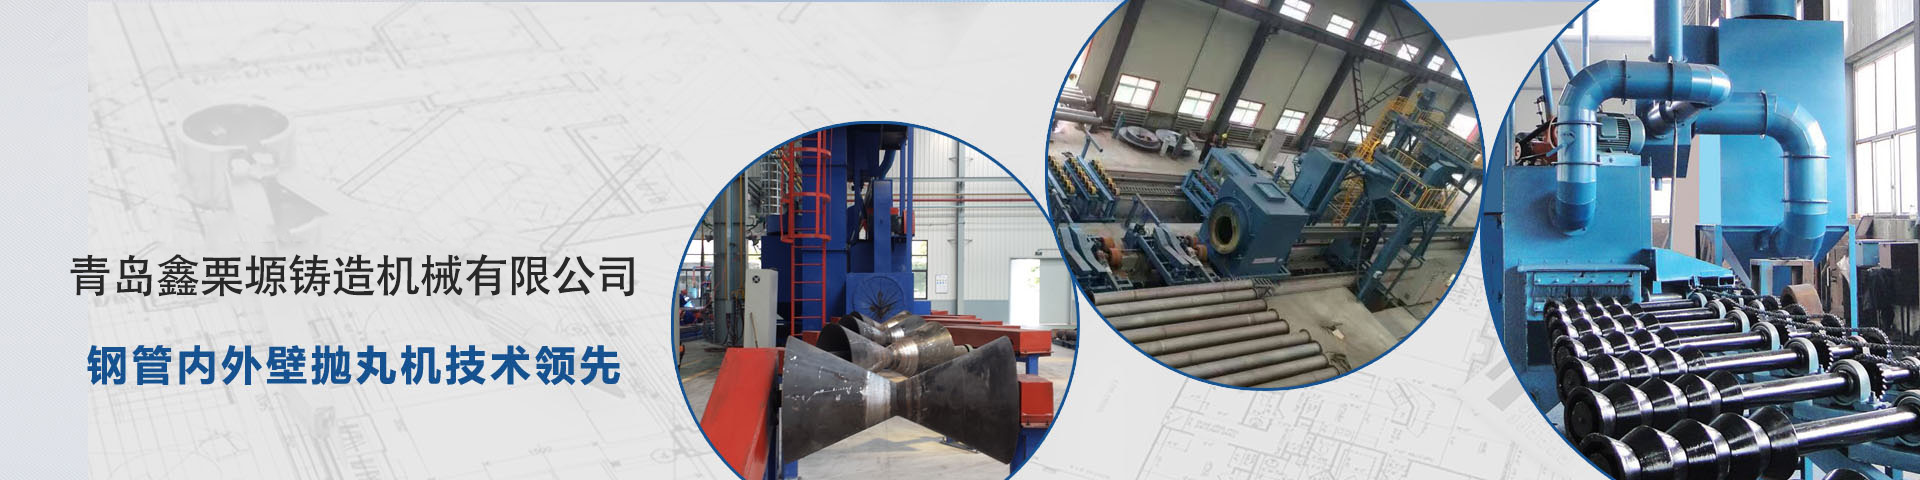 青岛铸德栗机械有限公司专注于钢管内外壁抛丸机的研发与生产